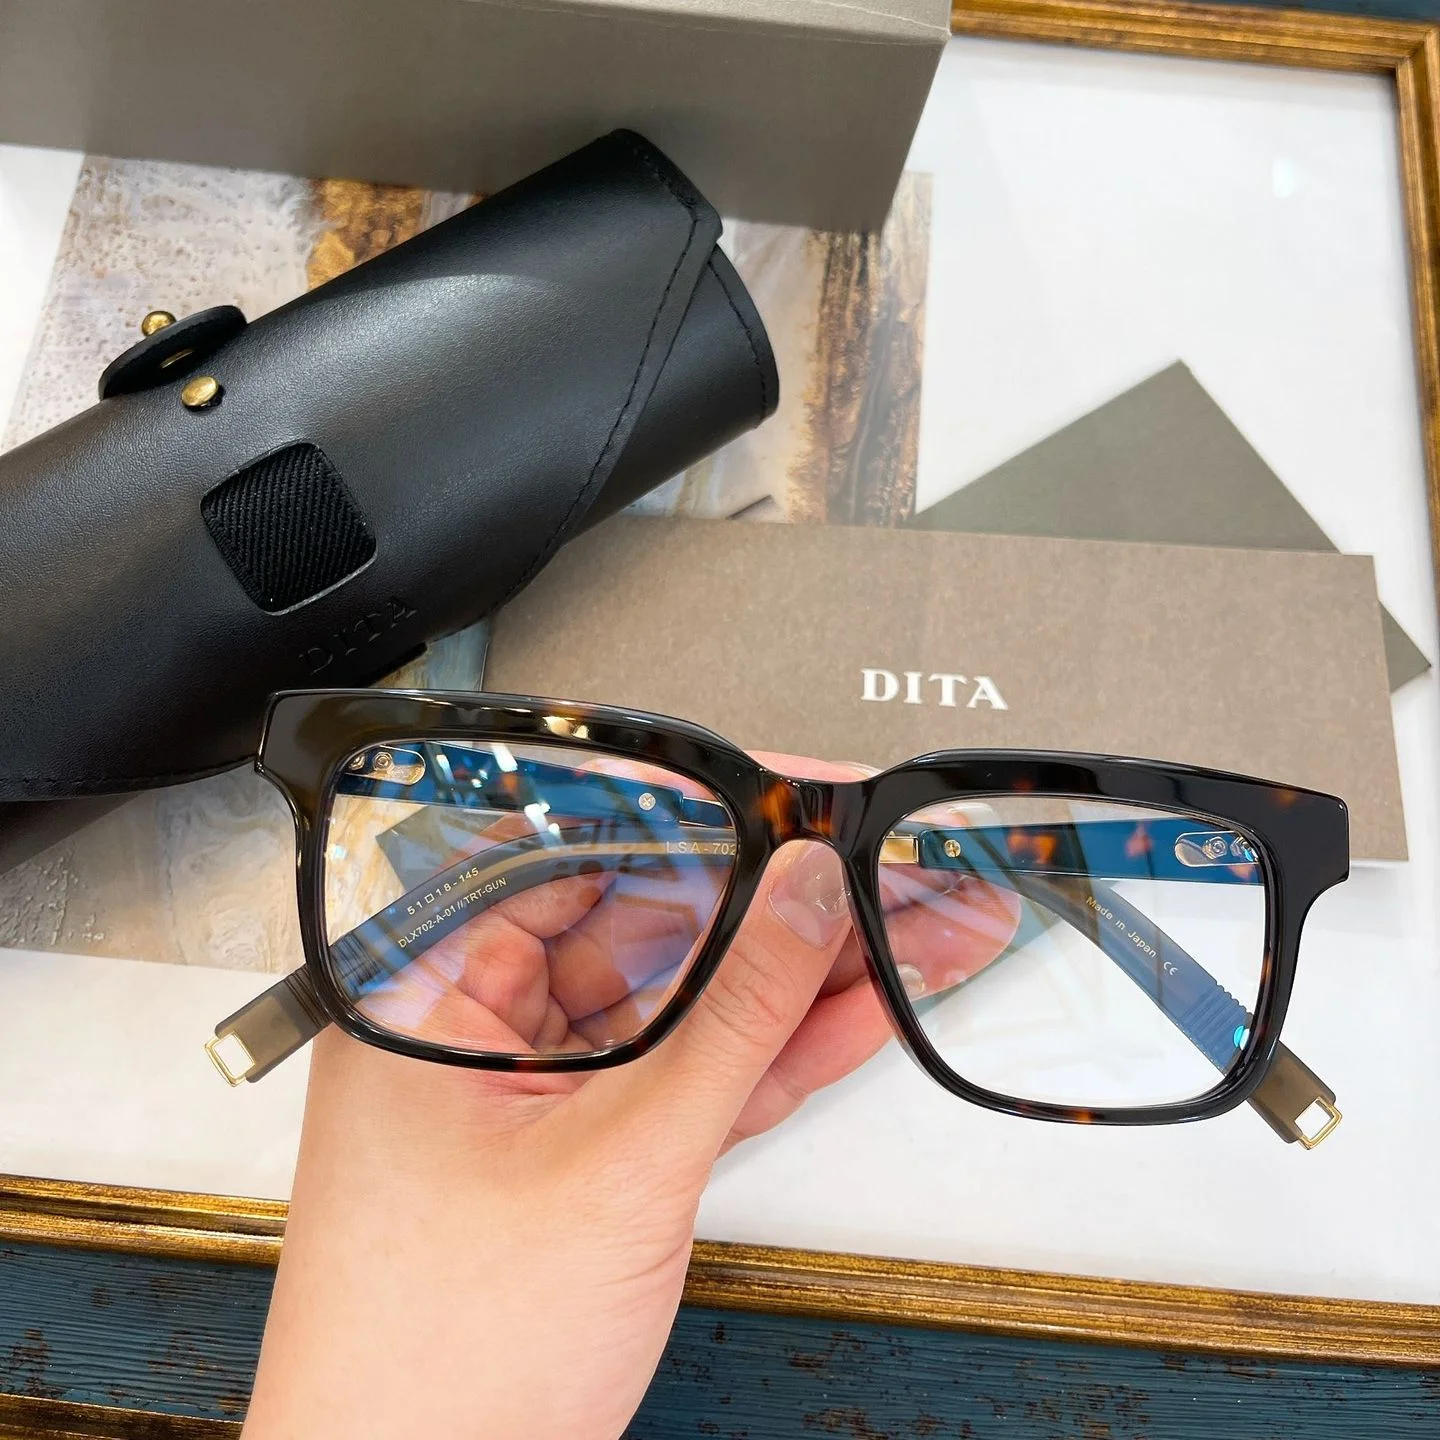 

Солнцезащитные очки DITA DLX702 для мужчин и женщин, популярные антибликовые деловые ретро-очки для вождения, с поляризационными линзами UV400